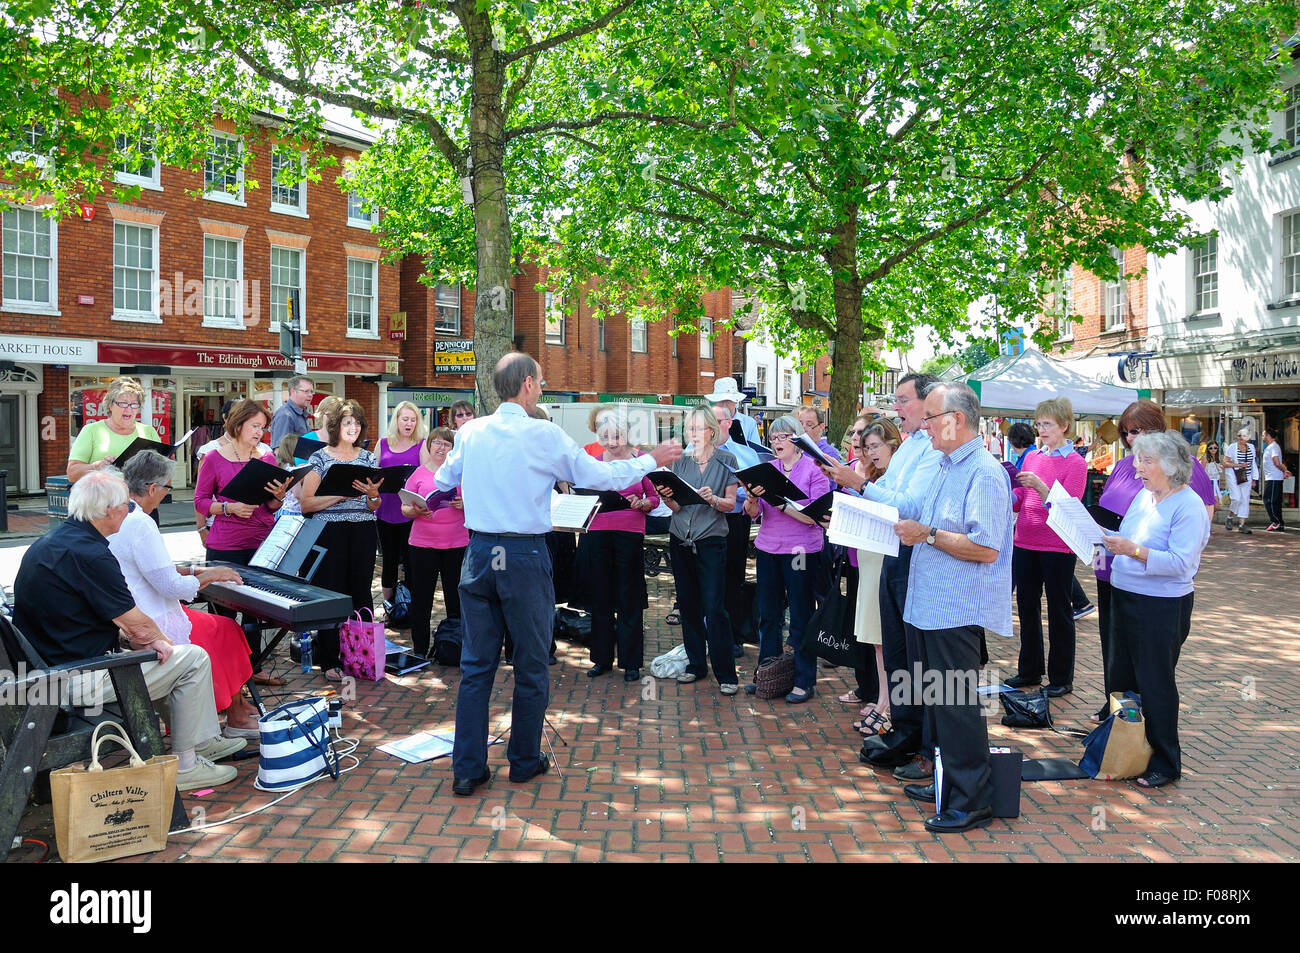 Chant chorale locale dans la région de Market Place, Wokingham, Berkshire, Angleterre, Royaume-Uni Banque D'Images